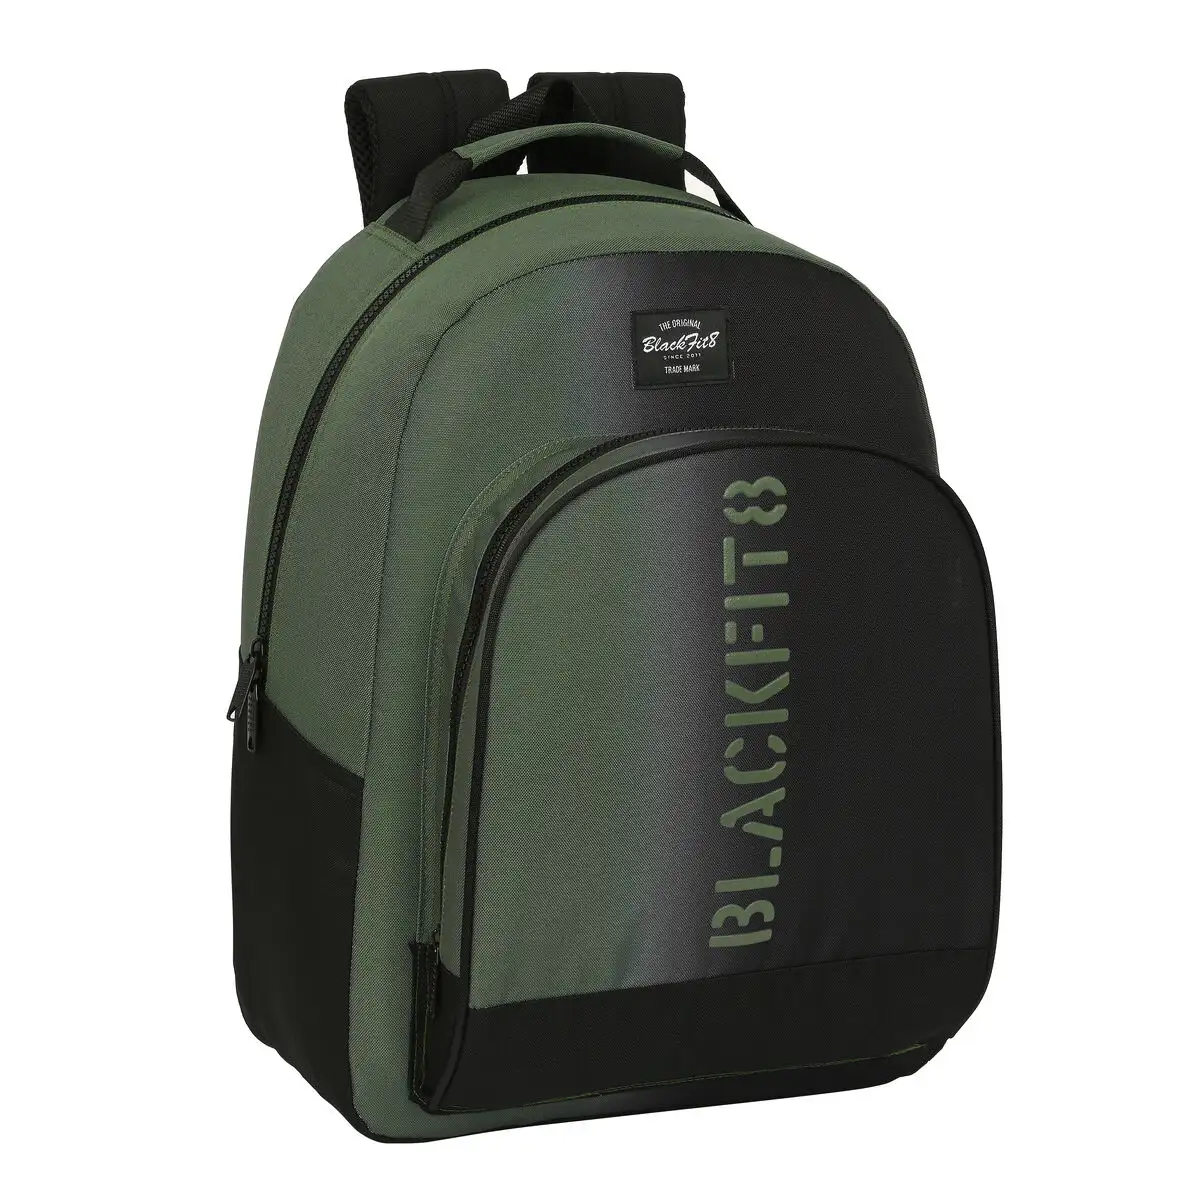 Cartable blackfit8 gradient noir vert militaire 32 x 42 x 15 cm _1333. DIAYTAR SENEGAL - Votre Passage vers le Chic et l'Élégance. Naviguez à travers notre boutique en ligne pour trouver des produits qui ajoutent une touche sophistiquée à votre style.